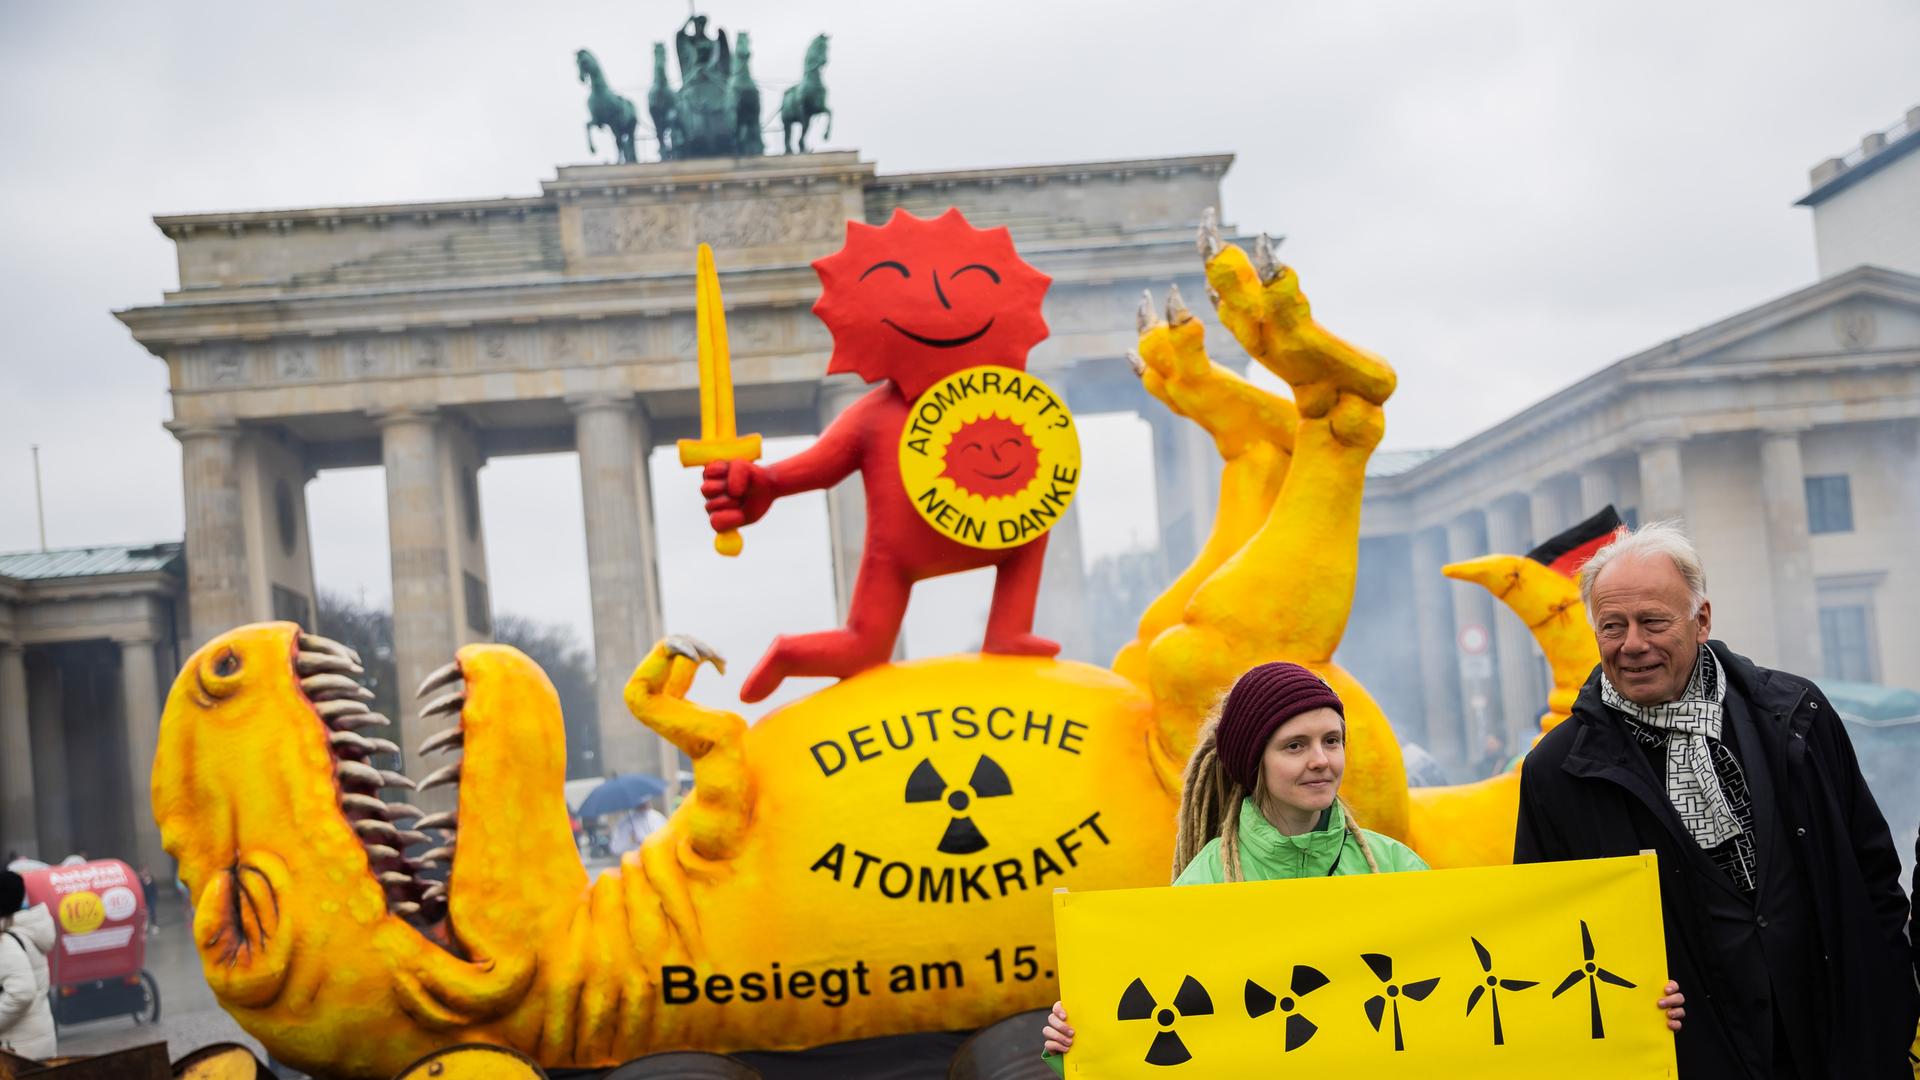 Jürgen Trittin (Bündnis 90/Die Grünen), Mitglied des Deutschen Bundestages und ehemaliger Umweltminister, steht neben einer Aktivistin vor einer Dinosaurier-Figur und der roten Sonne, teil des Anti-Atomkraft-Logos, bei einer Aktion der Umweltorganisation Greenpeace vor dem Brandenburger Tor.